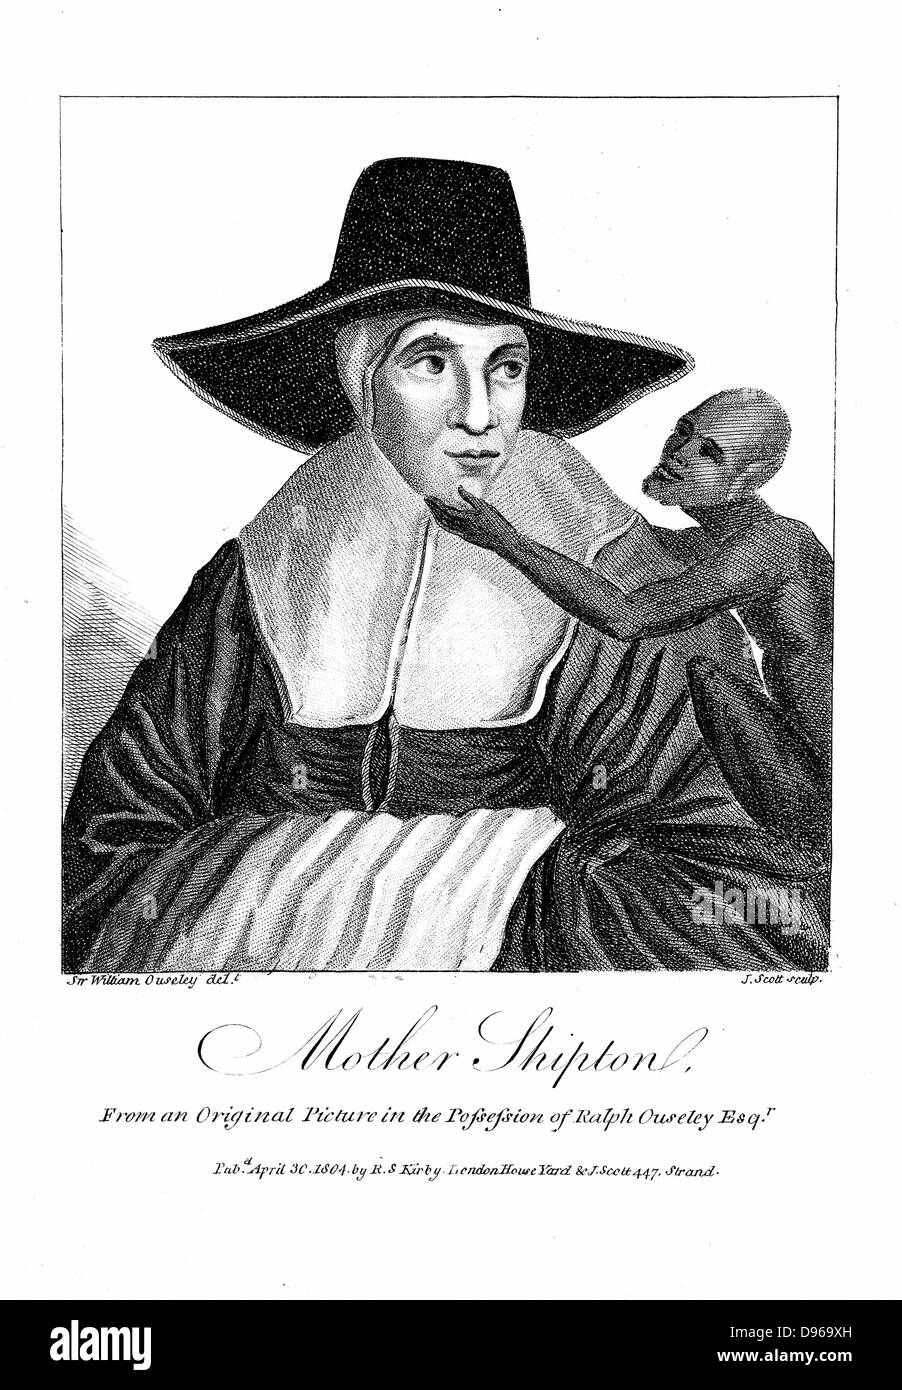 Mother Shipton (1488-C1560) English sorcière et prophétesse, mentionné pour la première fois en 1641. Ici avec son familier, un singe. Gravure, 1804. Banque D'Images